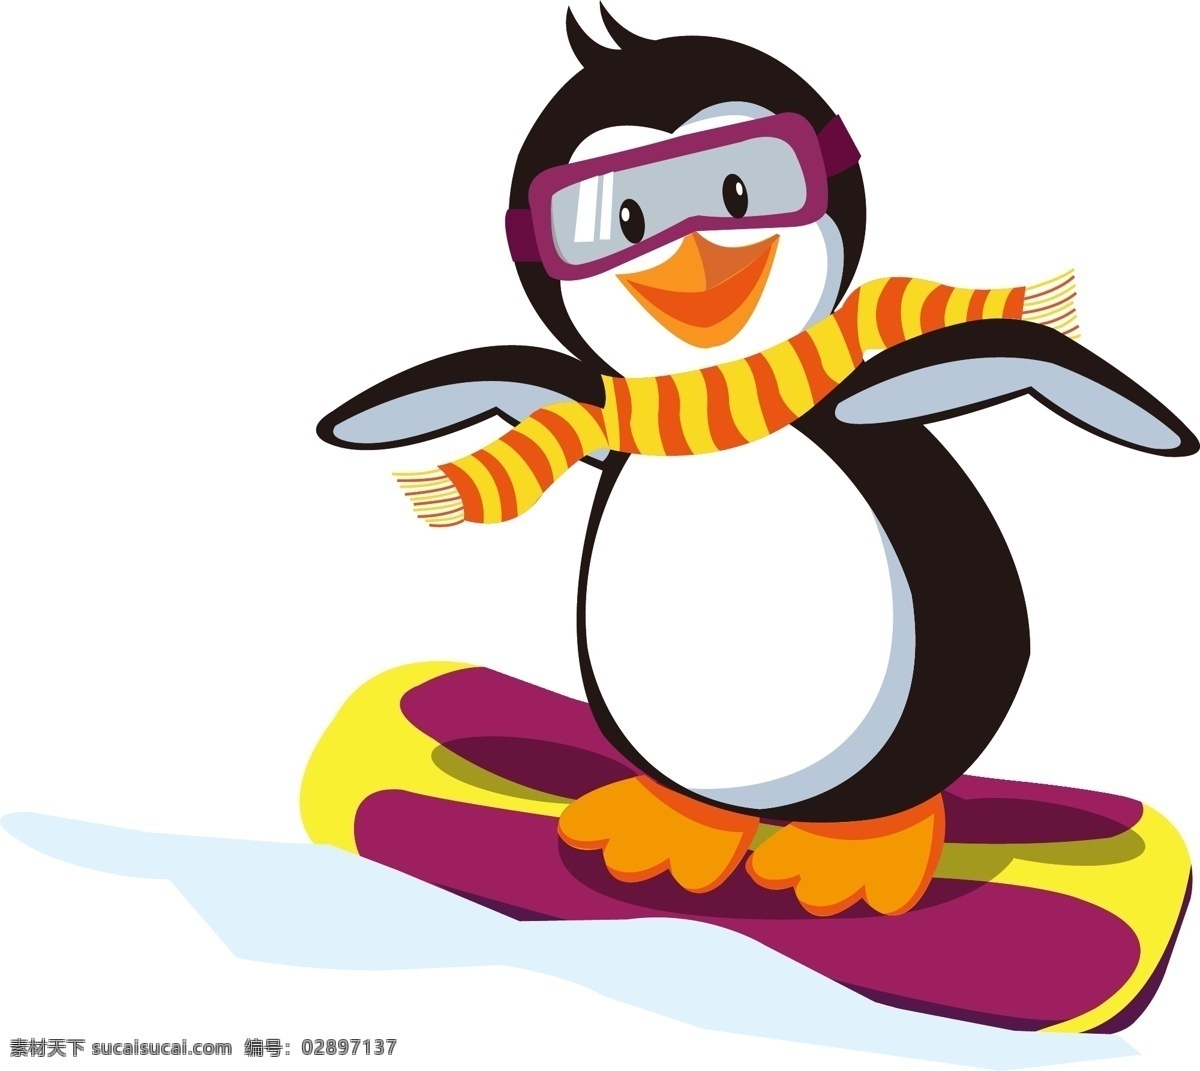 滑雪 企鹅 矢量图 冬天 动物 滑板 卡通动物 卡通人物 矢量 冬天滑雪 矢量人物